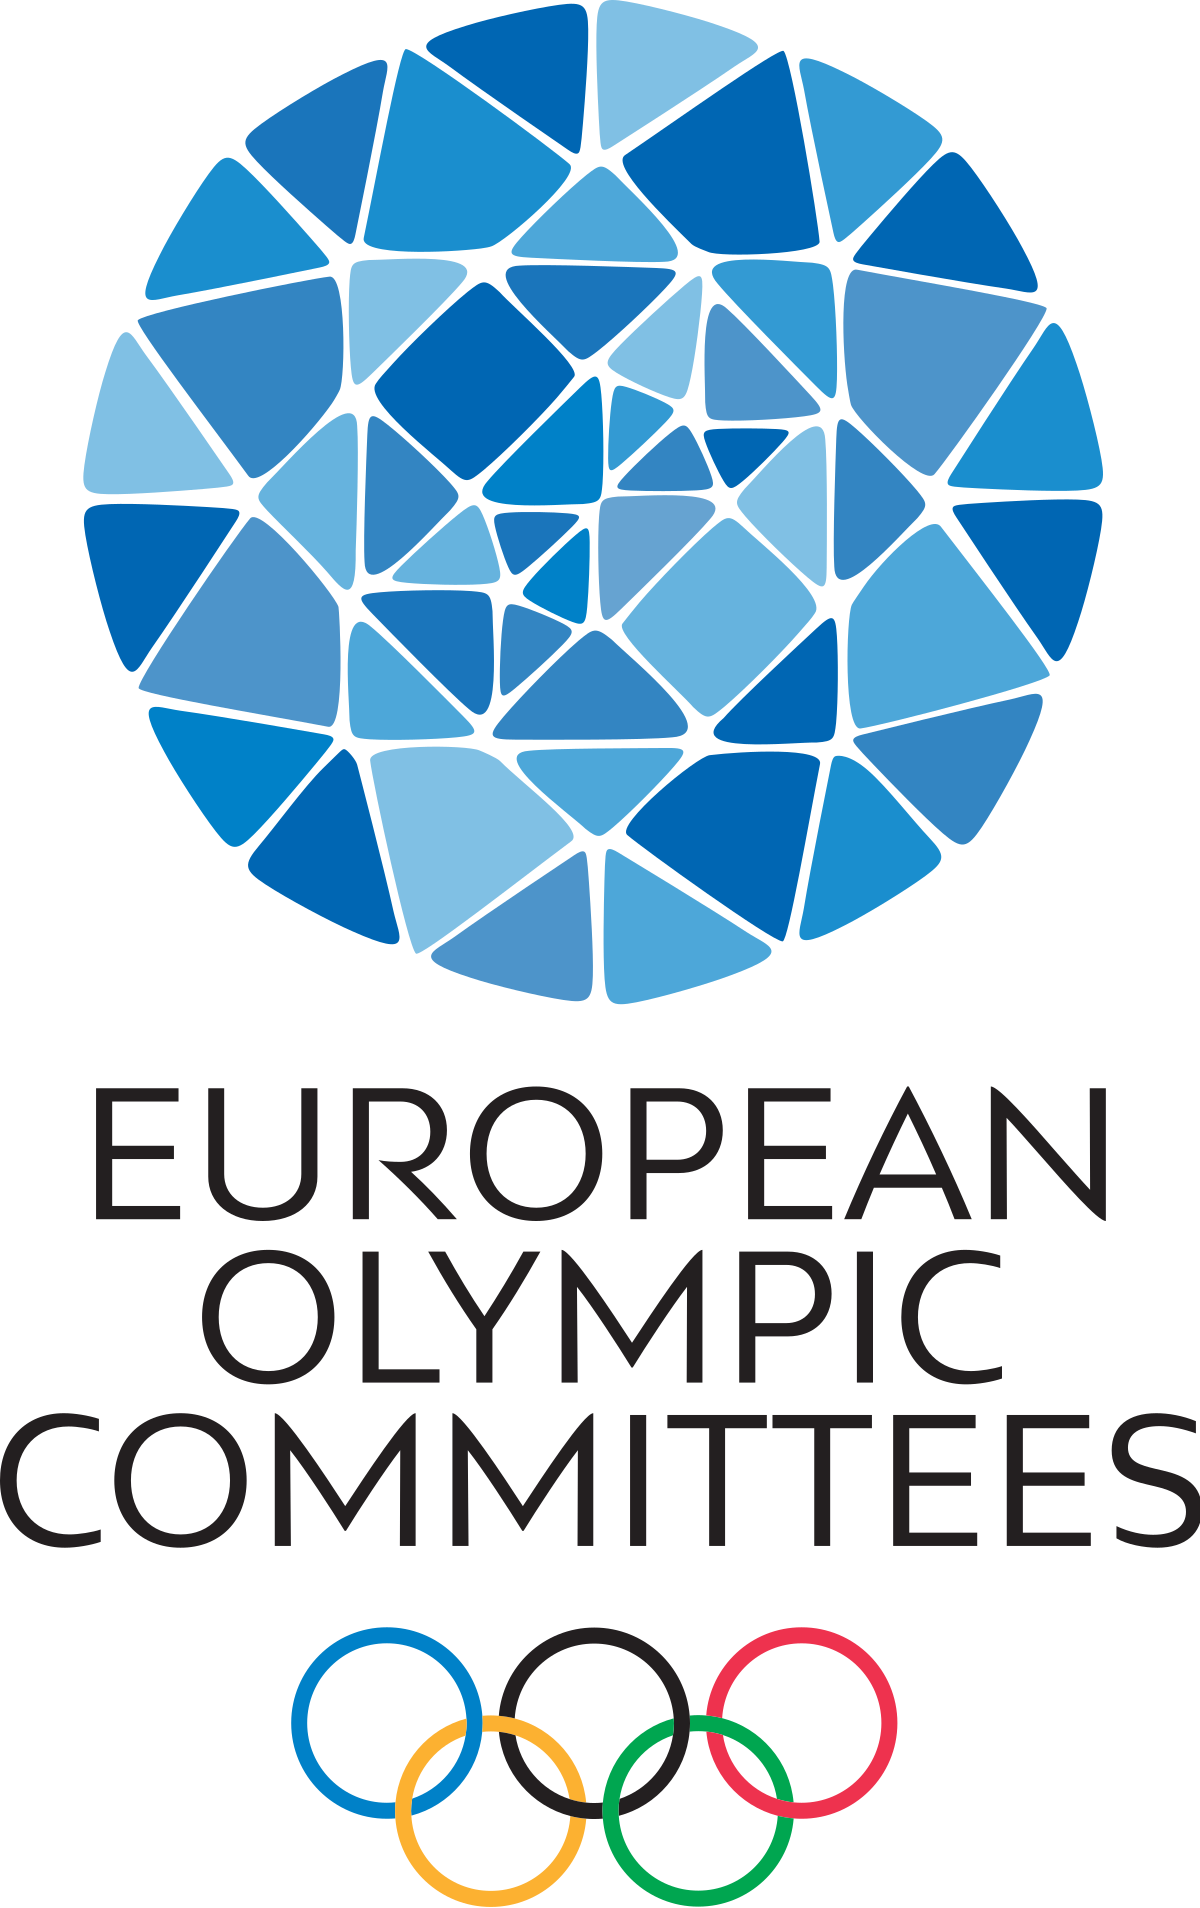 European Olympic Committees (EOC)